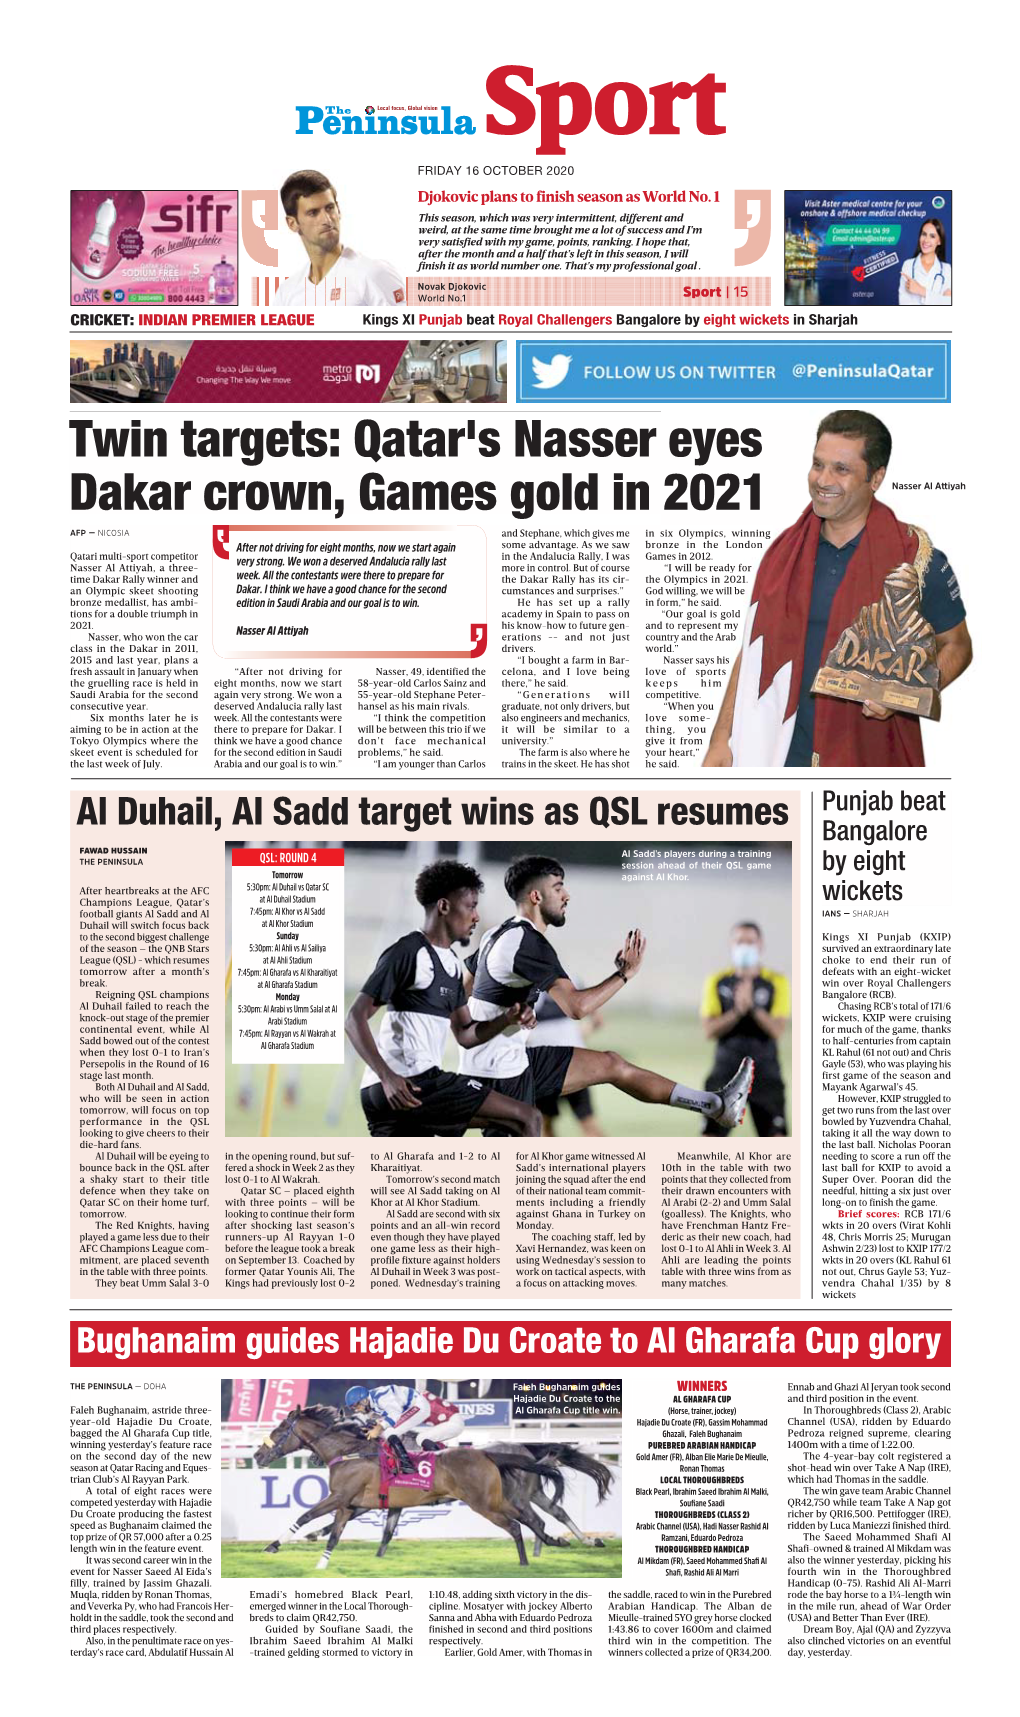 Qatar's Nasser Eyes Dakar Crown, Games Gold